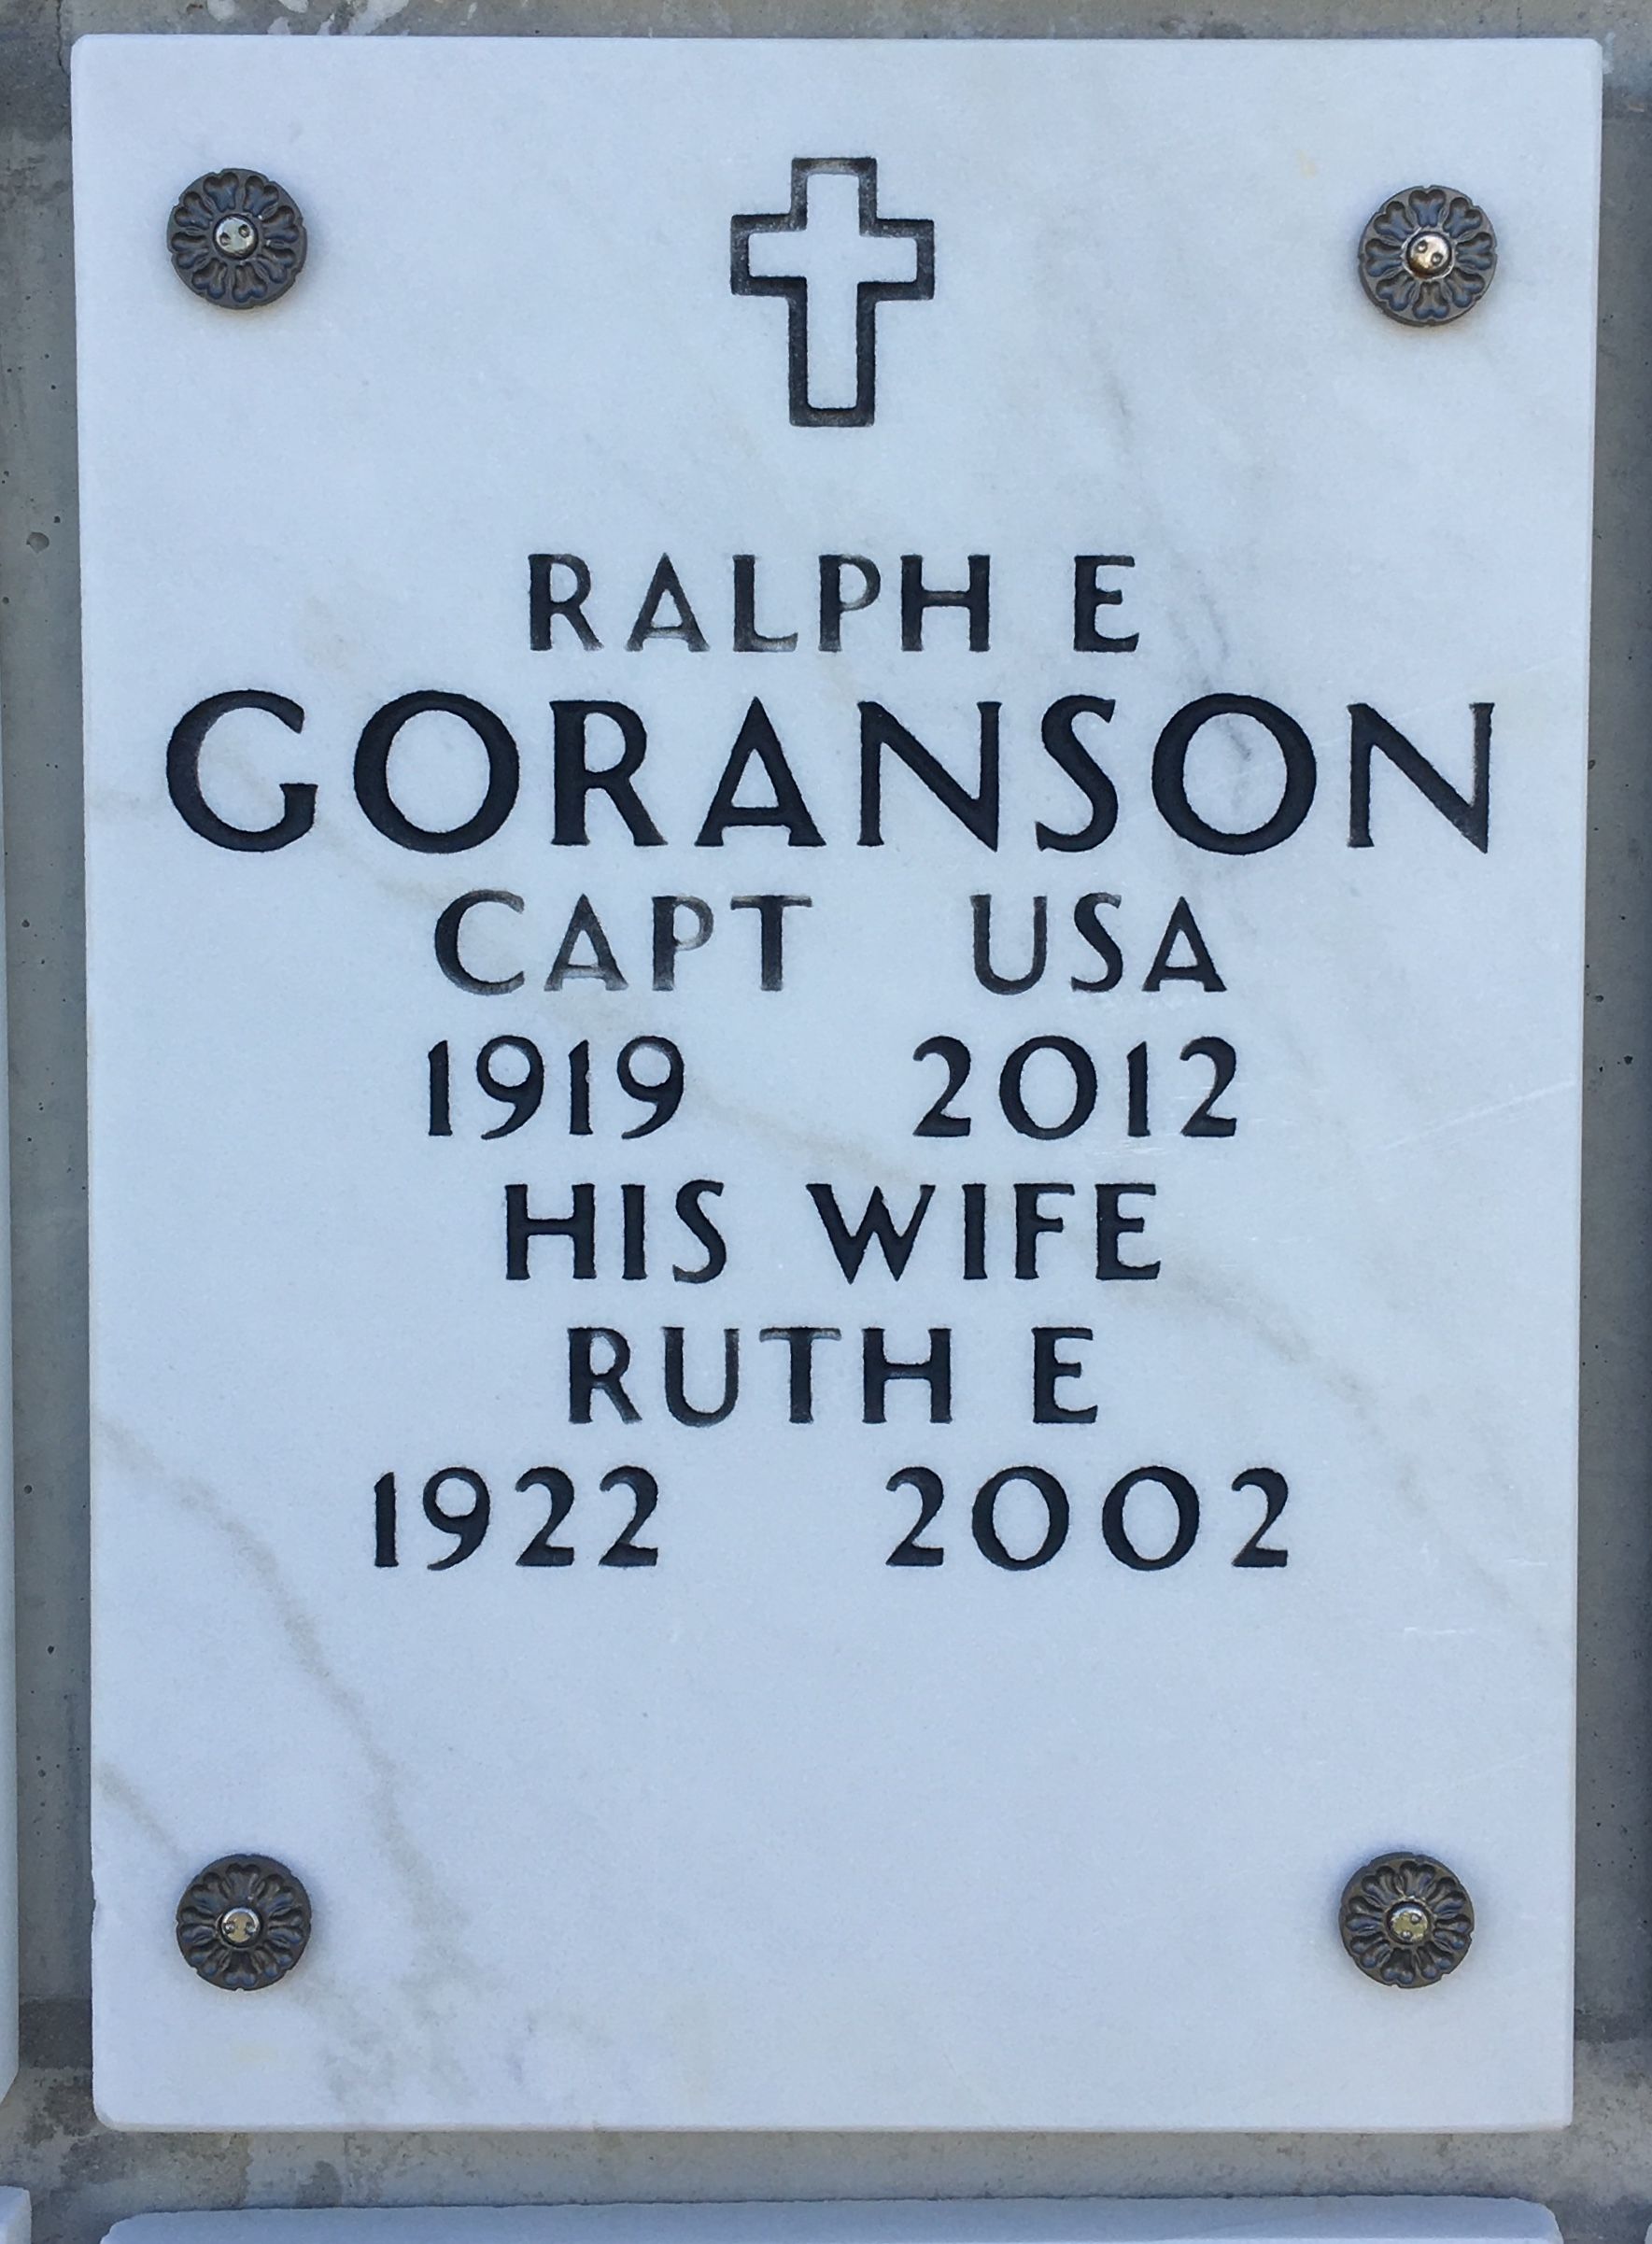 R. Goranson (Memorial)